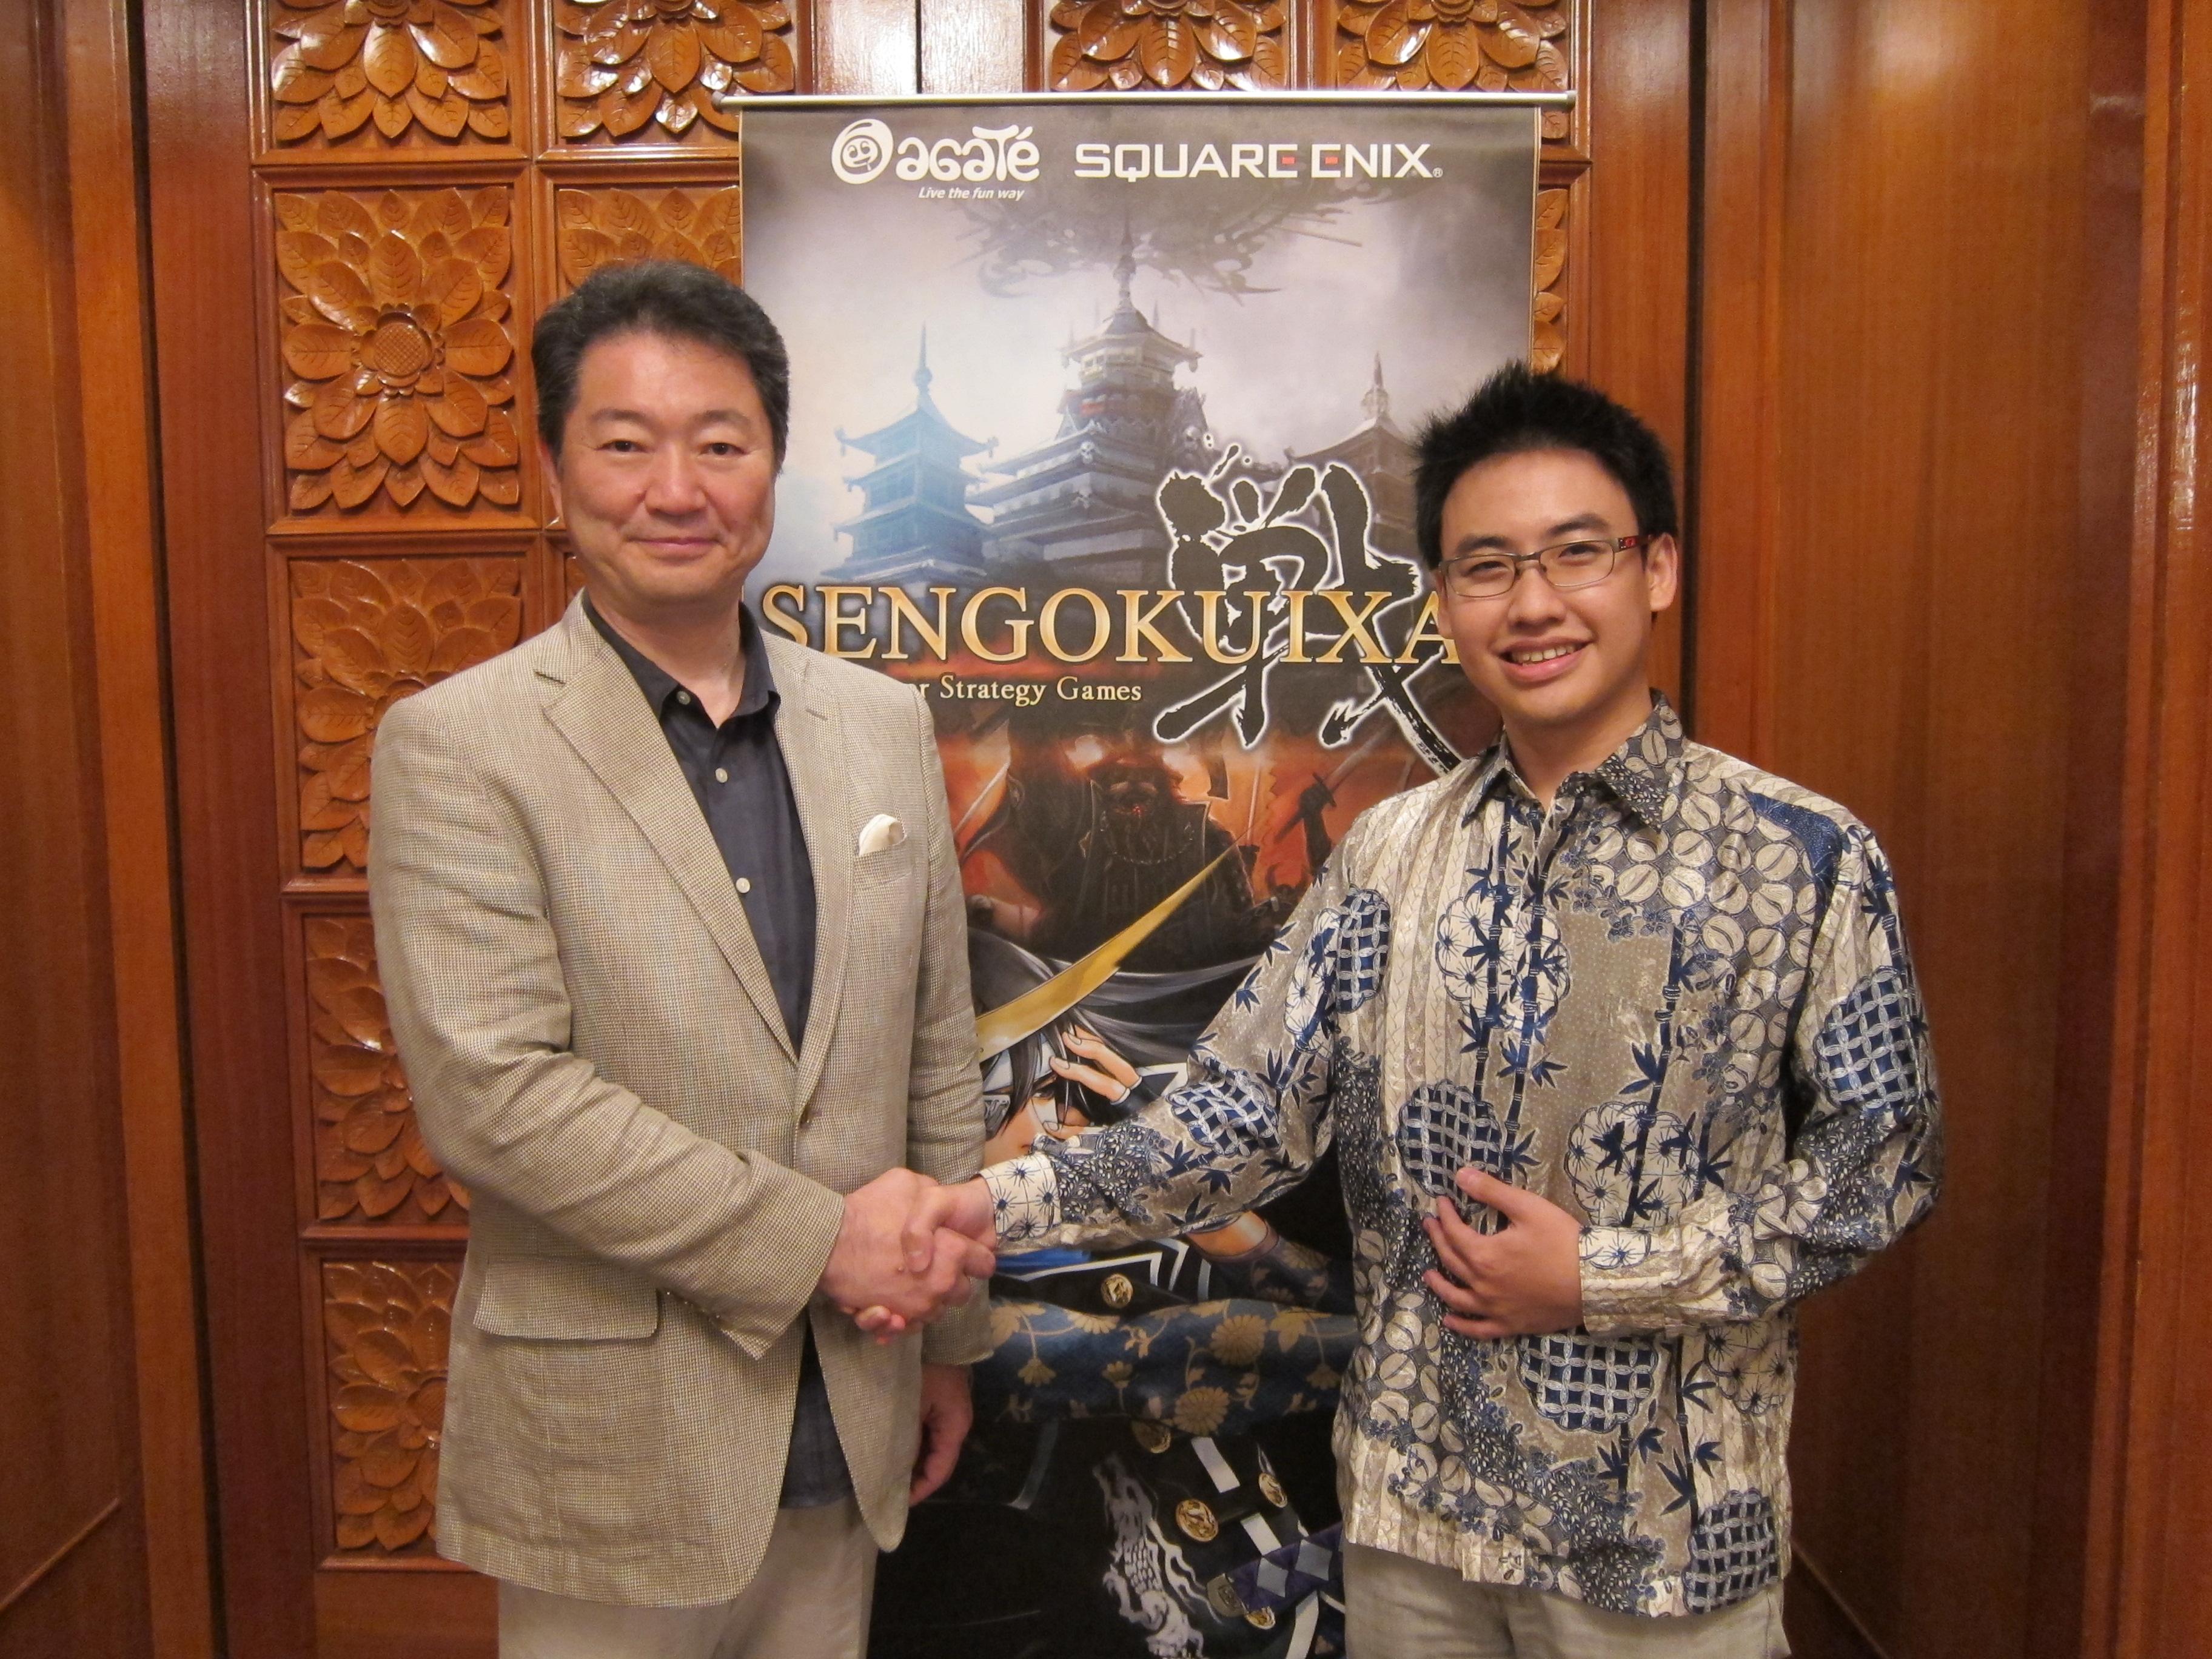 Square Enix Menggandeng Agate Studio Untuk Rilis Game SENGOKUIXA di Indonesia